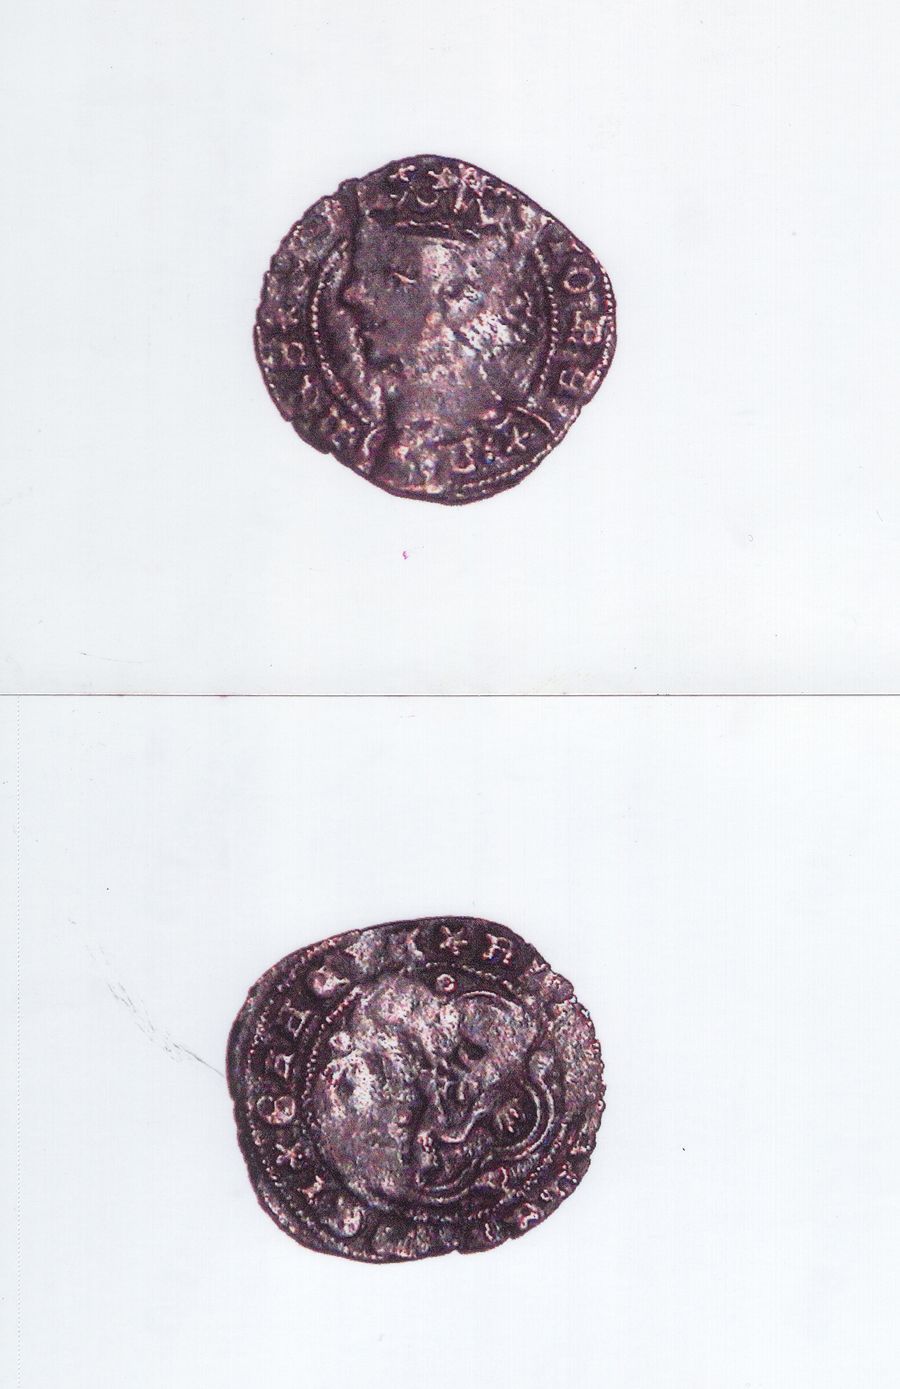 Monedas medievales procedentes de la necrópolis judía de Bembibre. (Archivo Manuel I. Olano)